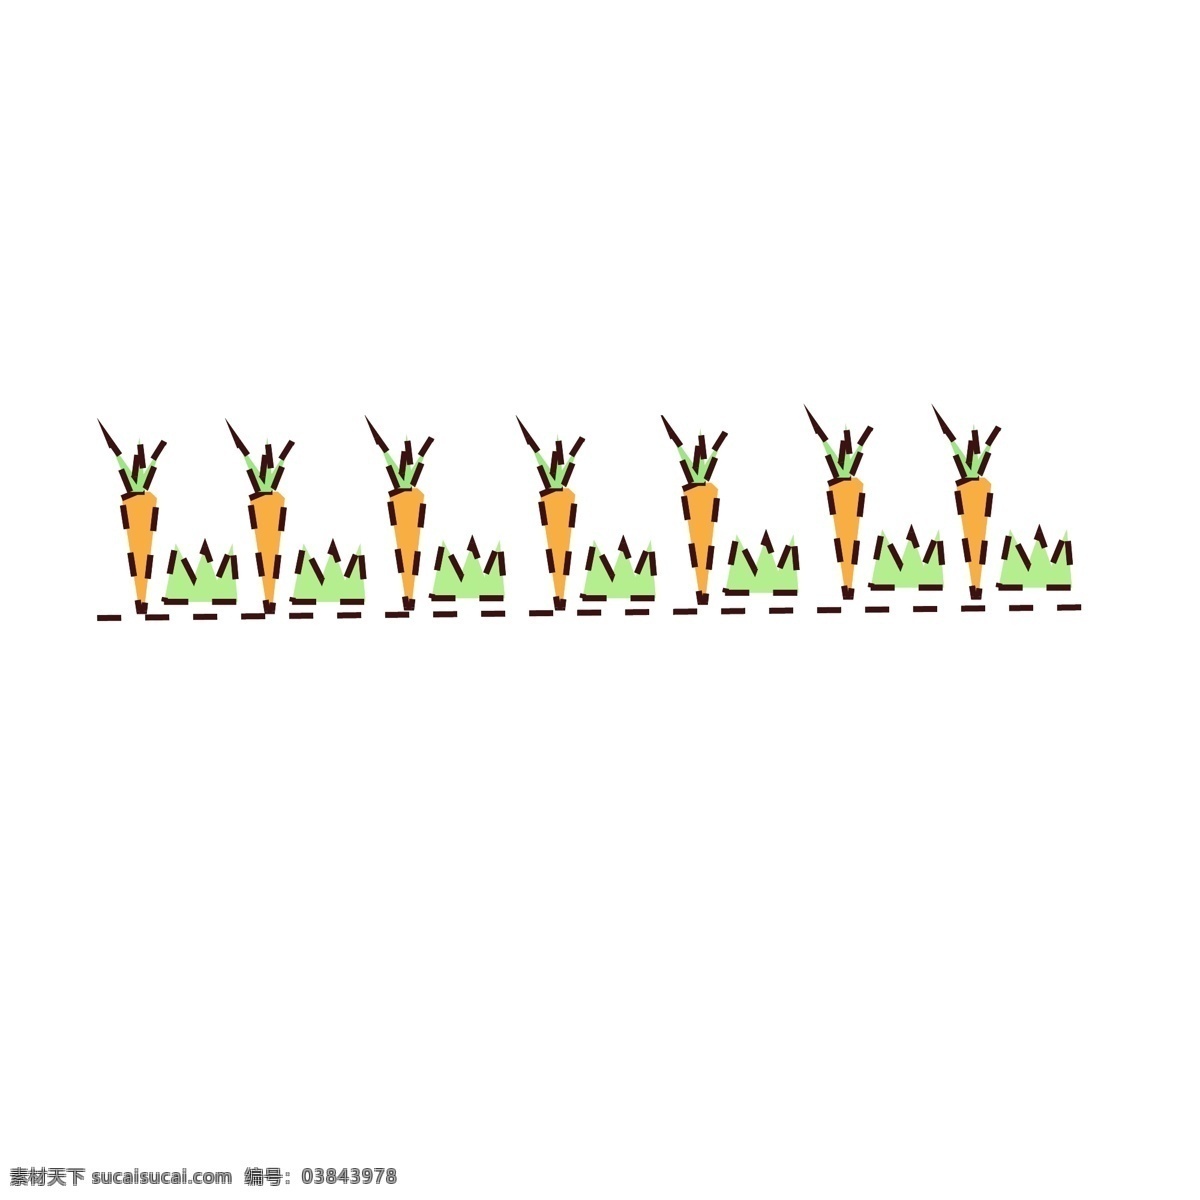 胡萝卜 分割线 手绘 插画 胡萝卜分割线 黄色的分割线 手绘分割线 卡通分割线 分割线装饰 分割线插画